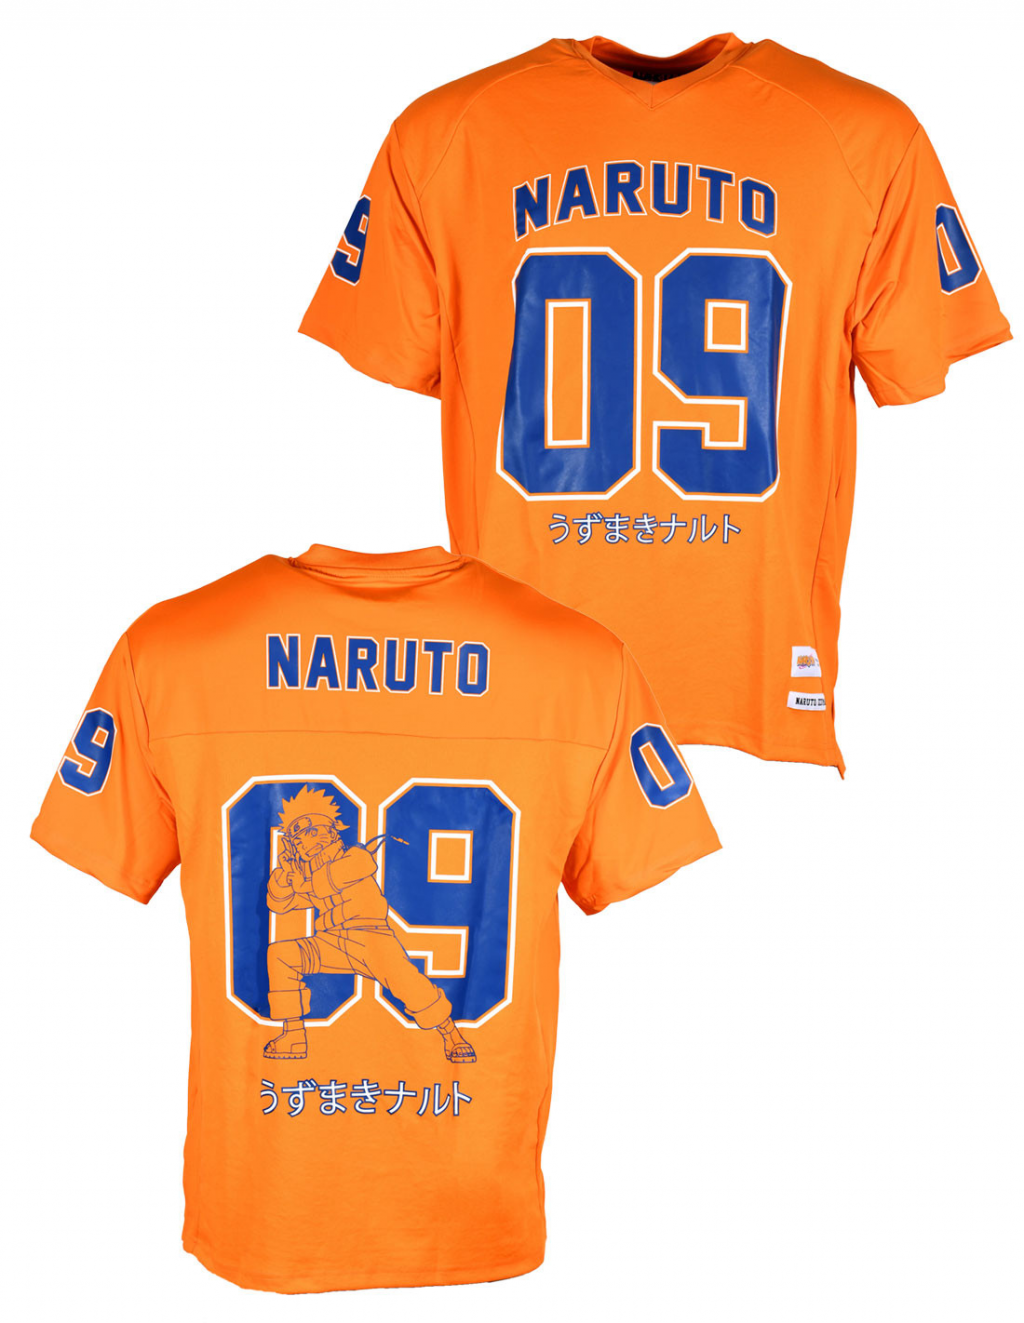 NARUTO - Naruto Uzumaki - T-Shirt Sports US Replica unisex (L)